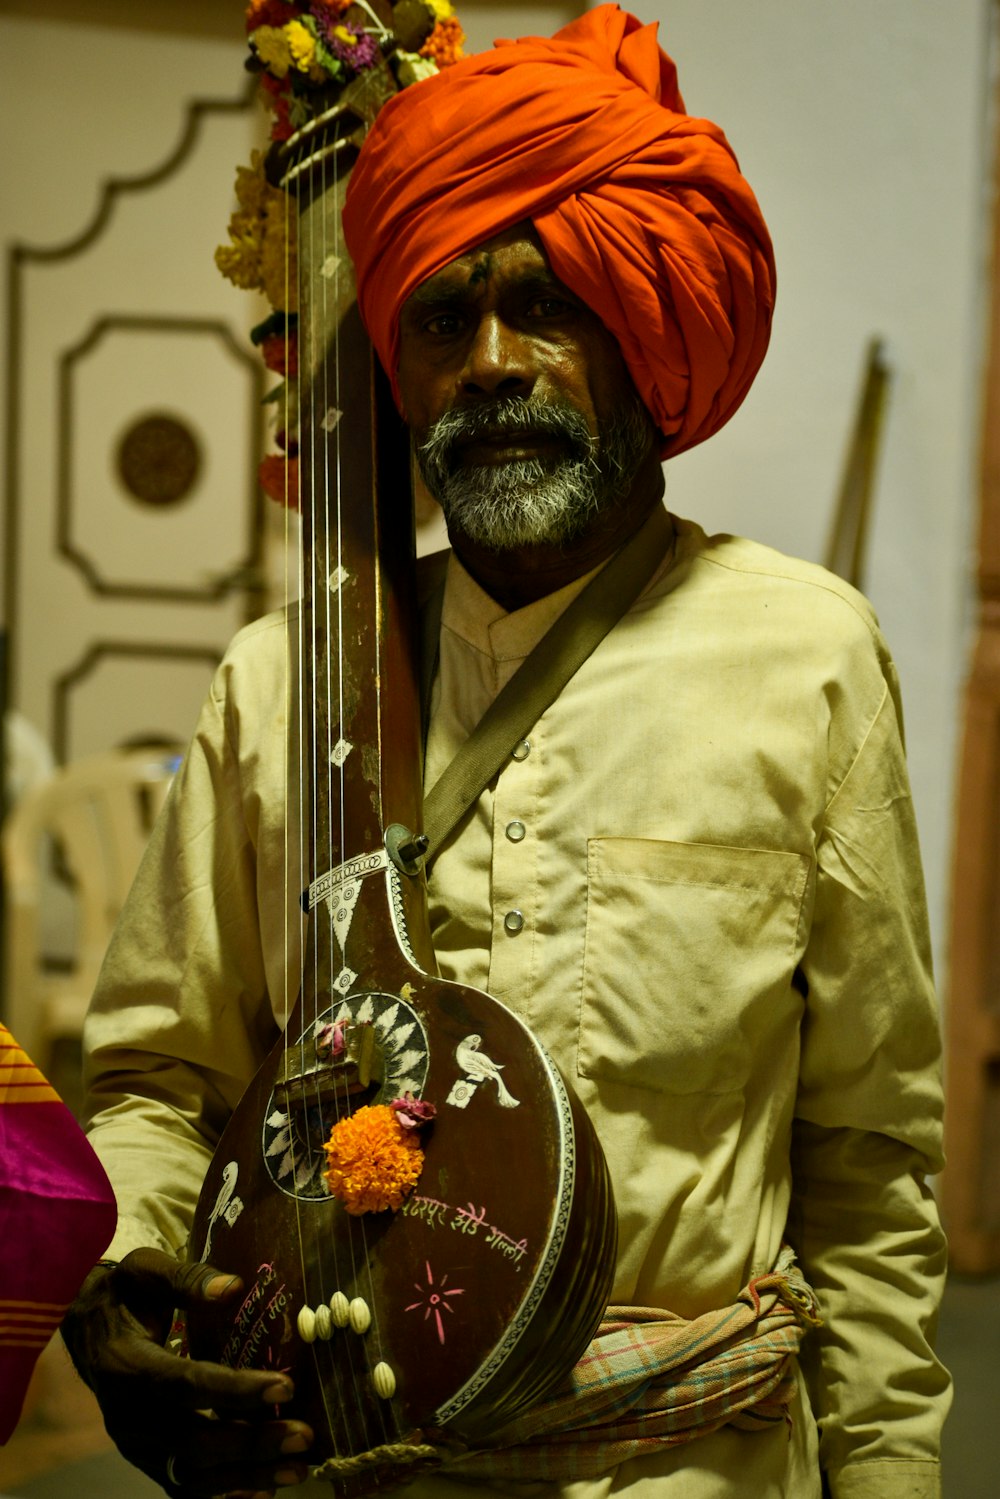 a man in a turban holding a guitar